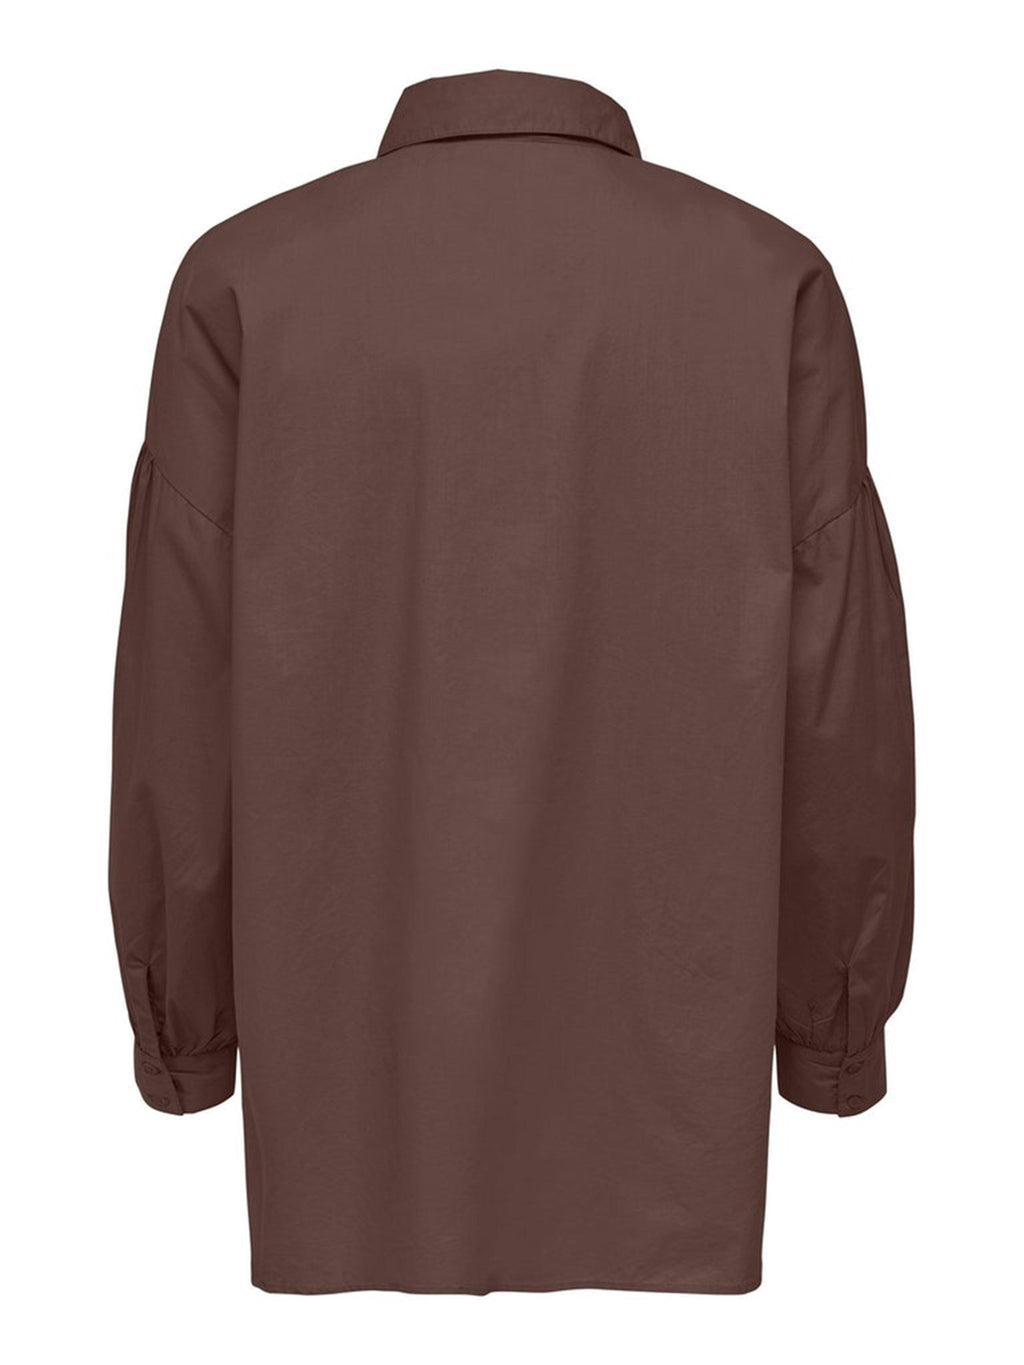 Camicia katy sciolta - borsa per la spesa